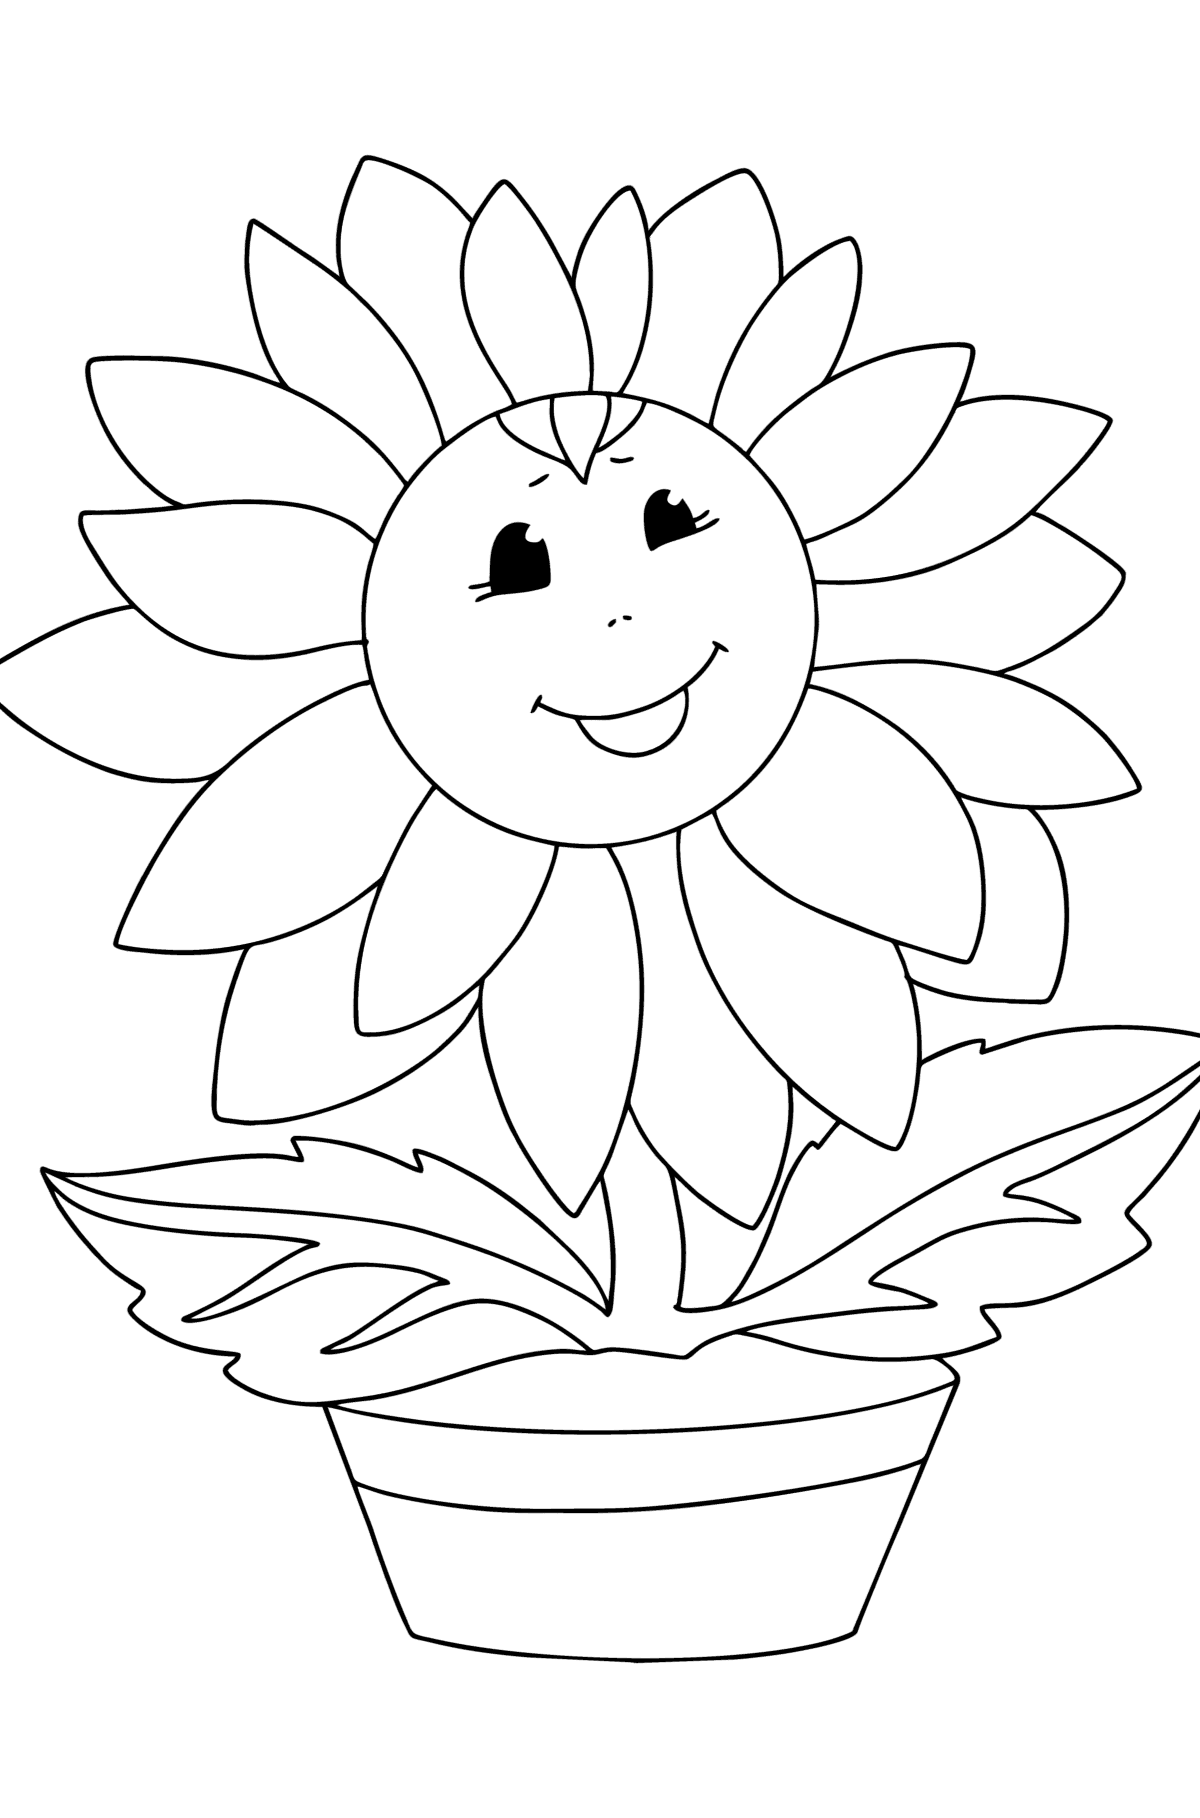 Tegning til fargelegging solsikke med øyne - Tegninger til fargelegging for barn